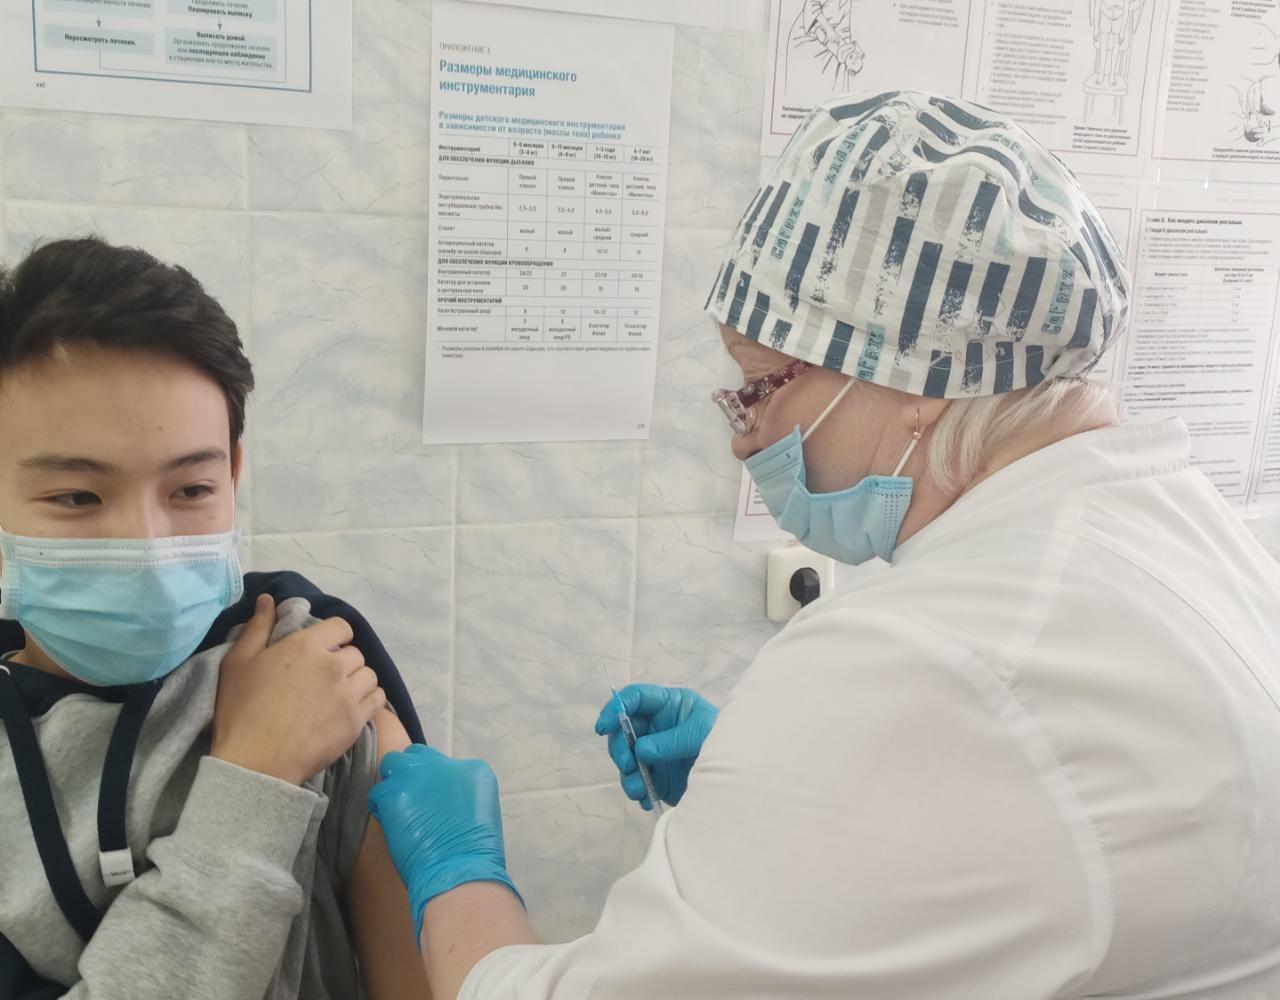 Учащиеся Белоусовской средней школы #1 получили 1 компонент вакцины  Pfizer в Глубоковской центральной areaной больнице.